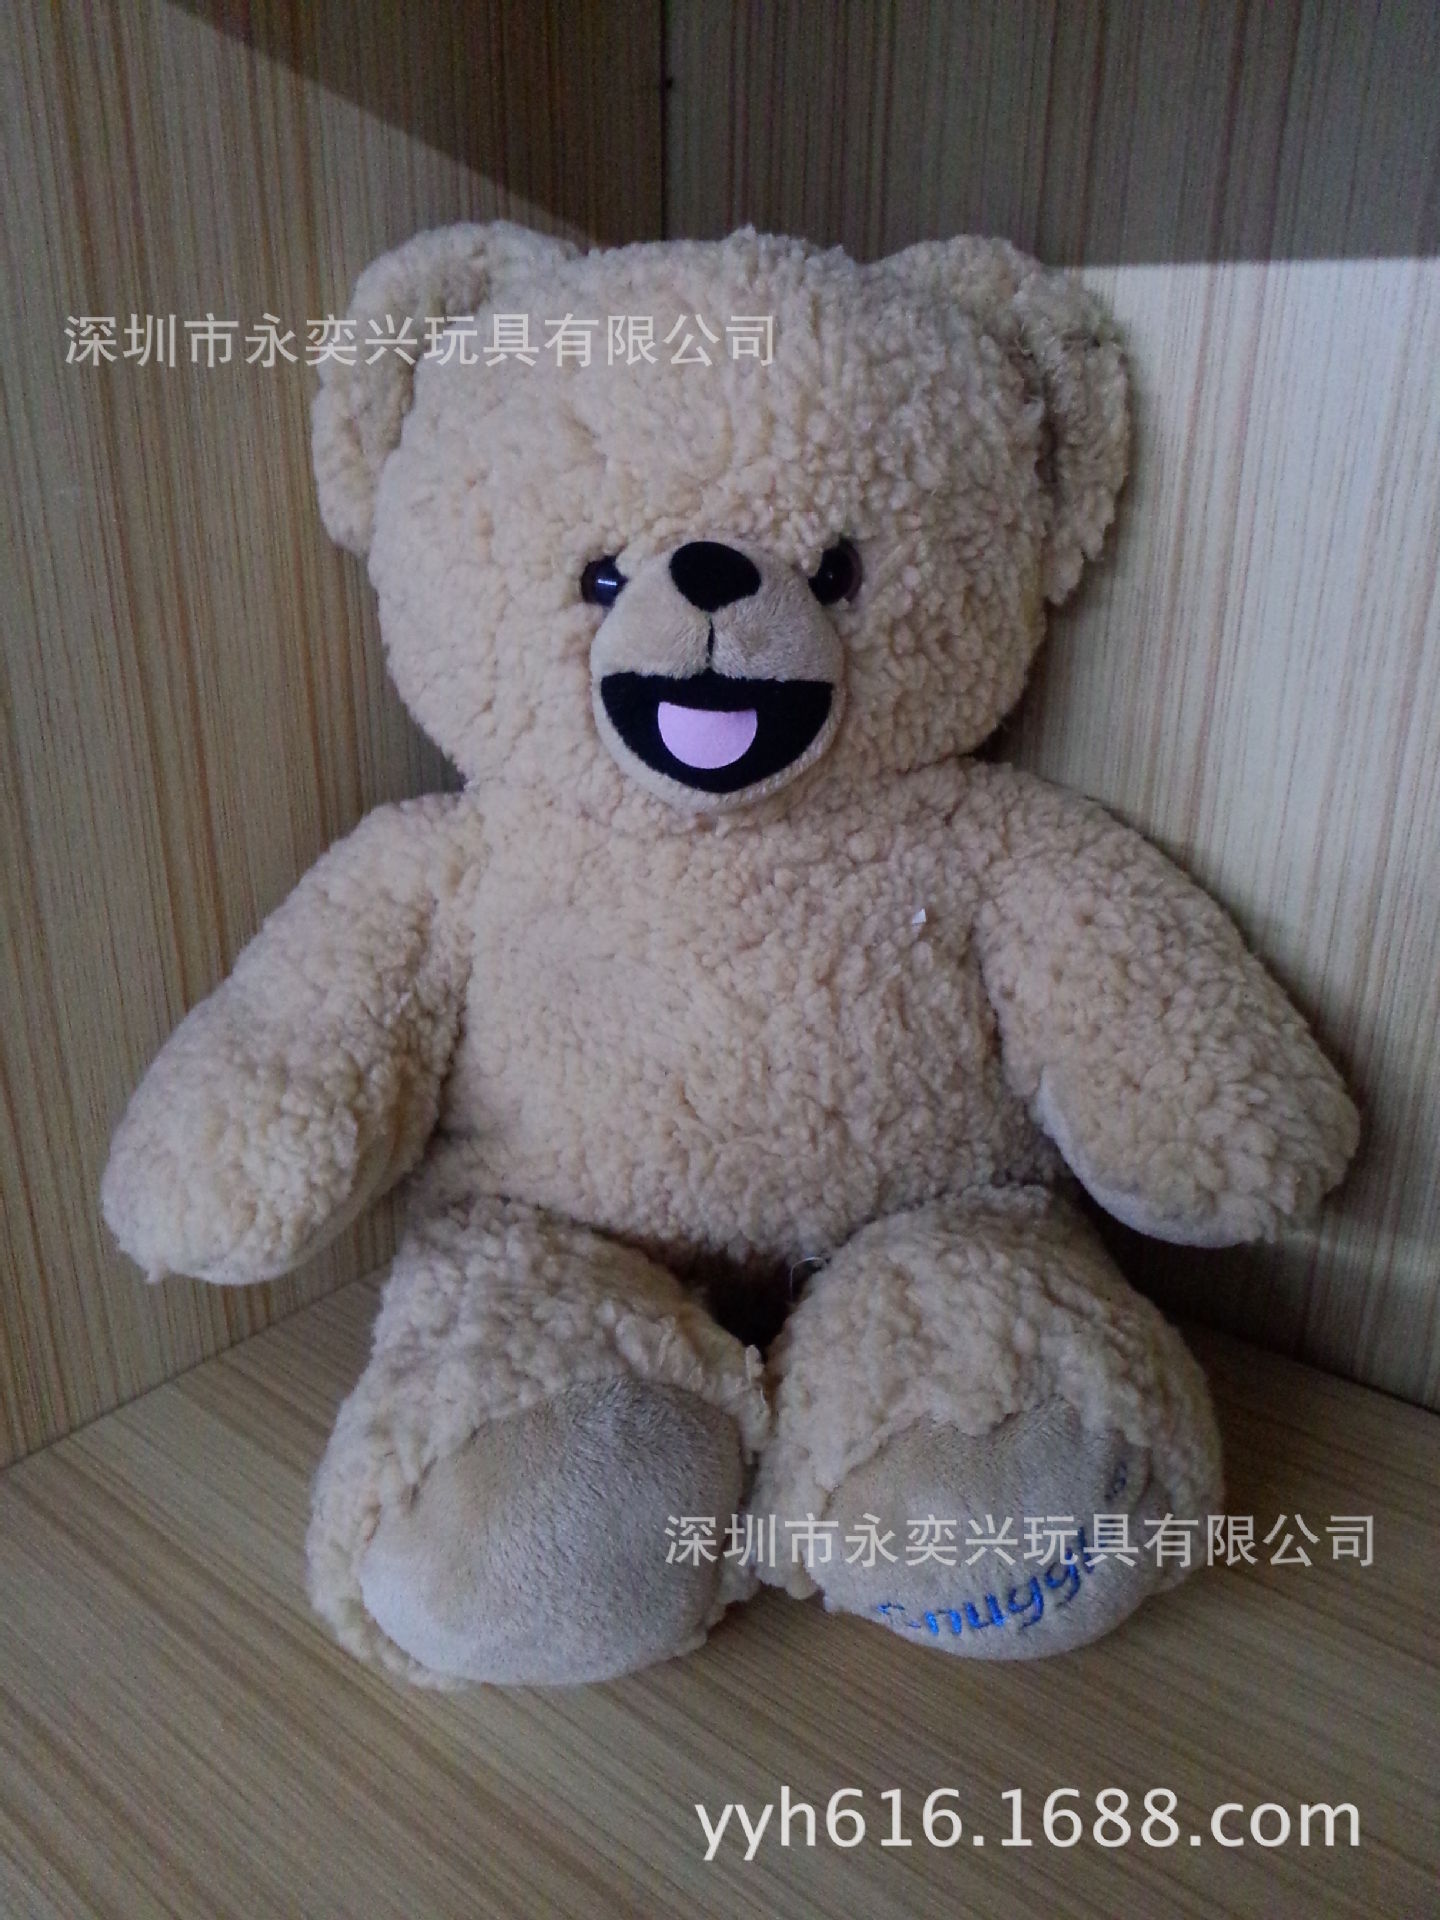 【深圳玩具厂专业生产各种各样毛绒玩具 泰迪